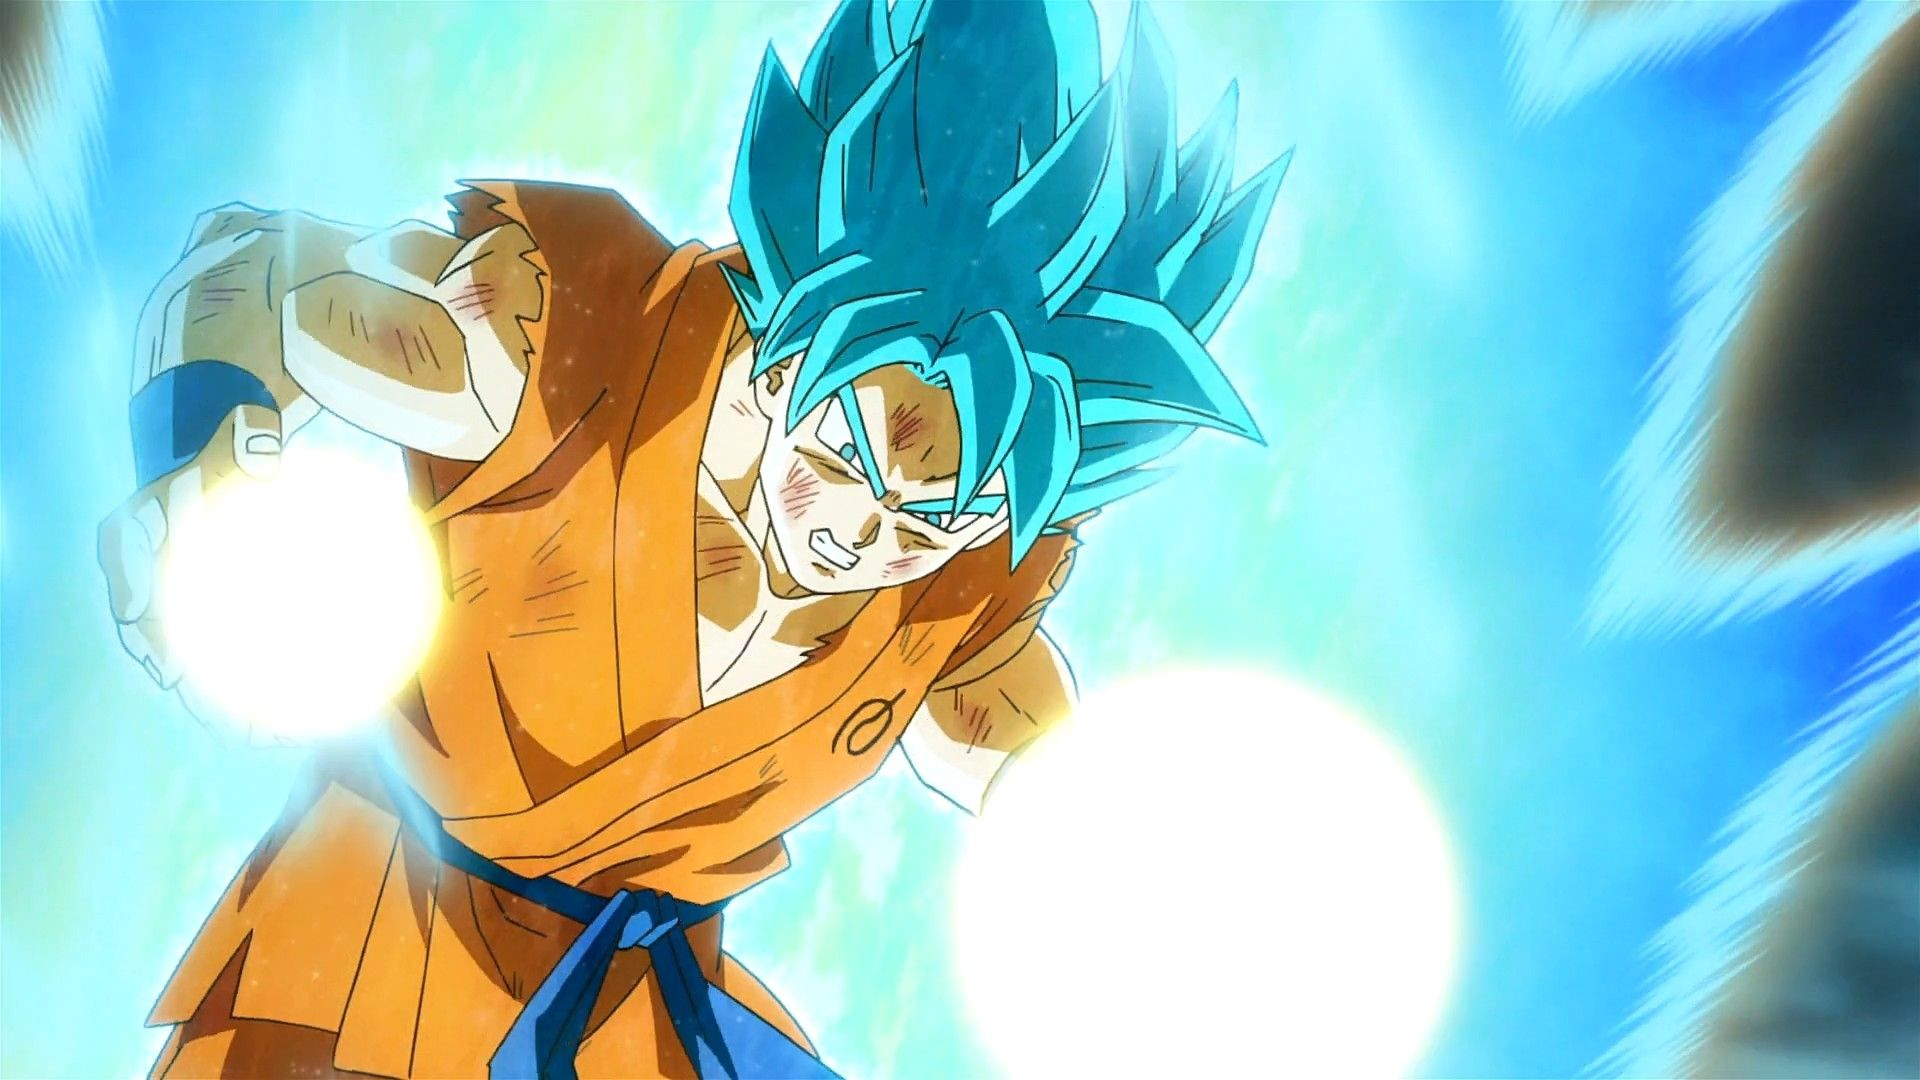 1920x1080 Son Goku Super Saiyan GOD Blue Wallpapers | Goku super saiyan blue, Super saiyan blue, Goku super saiya